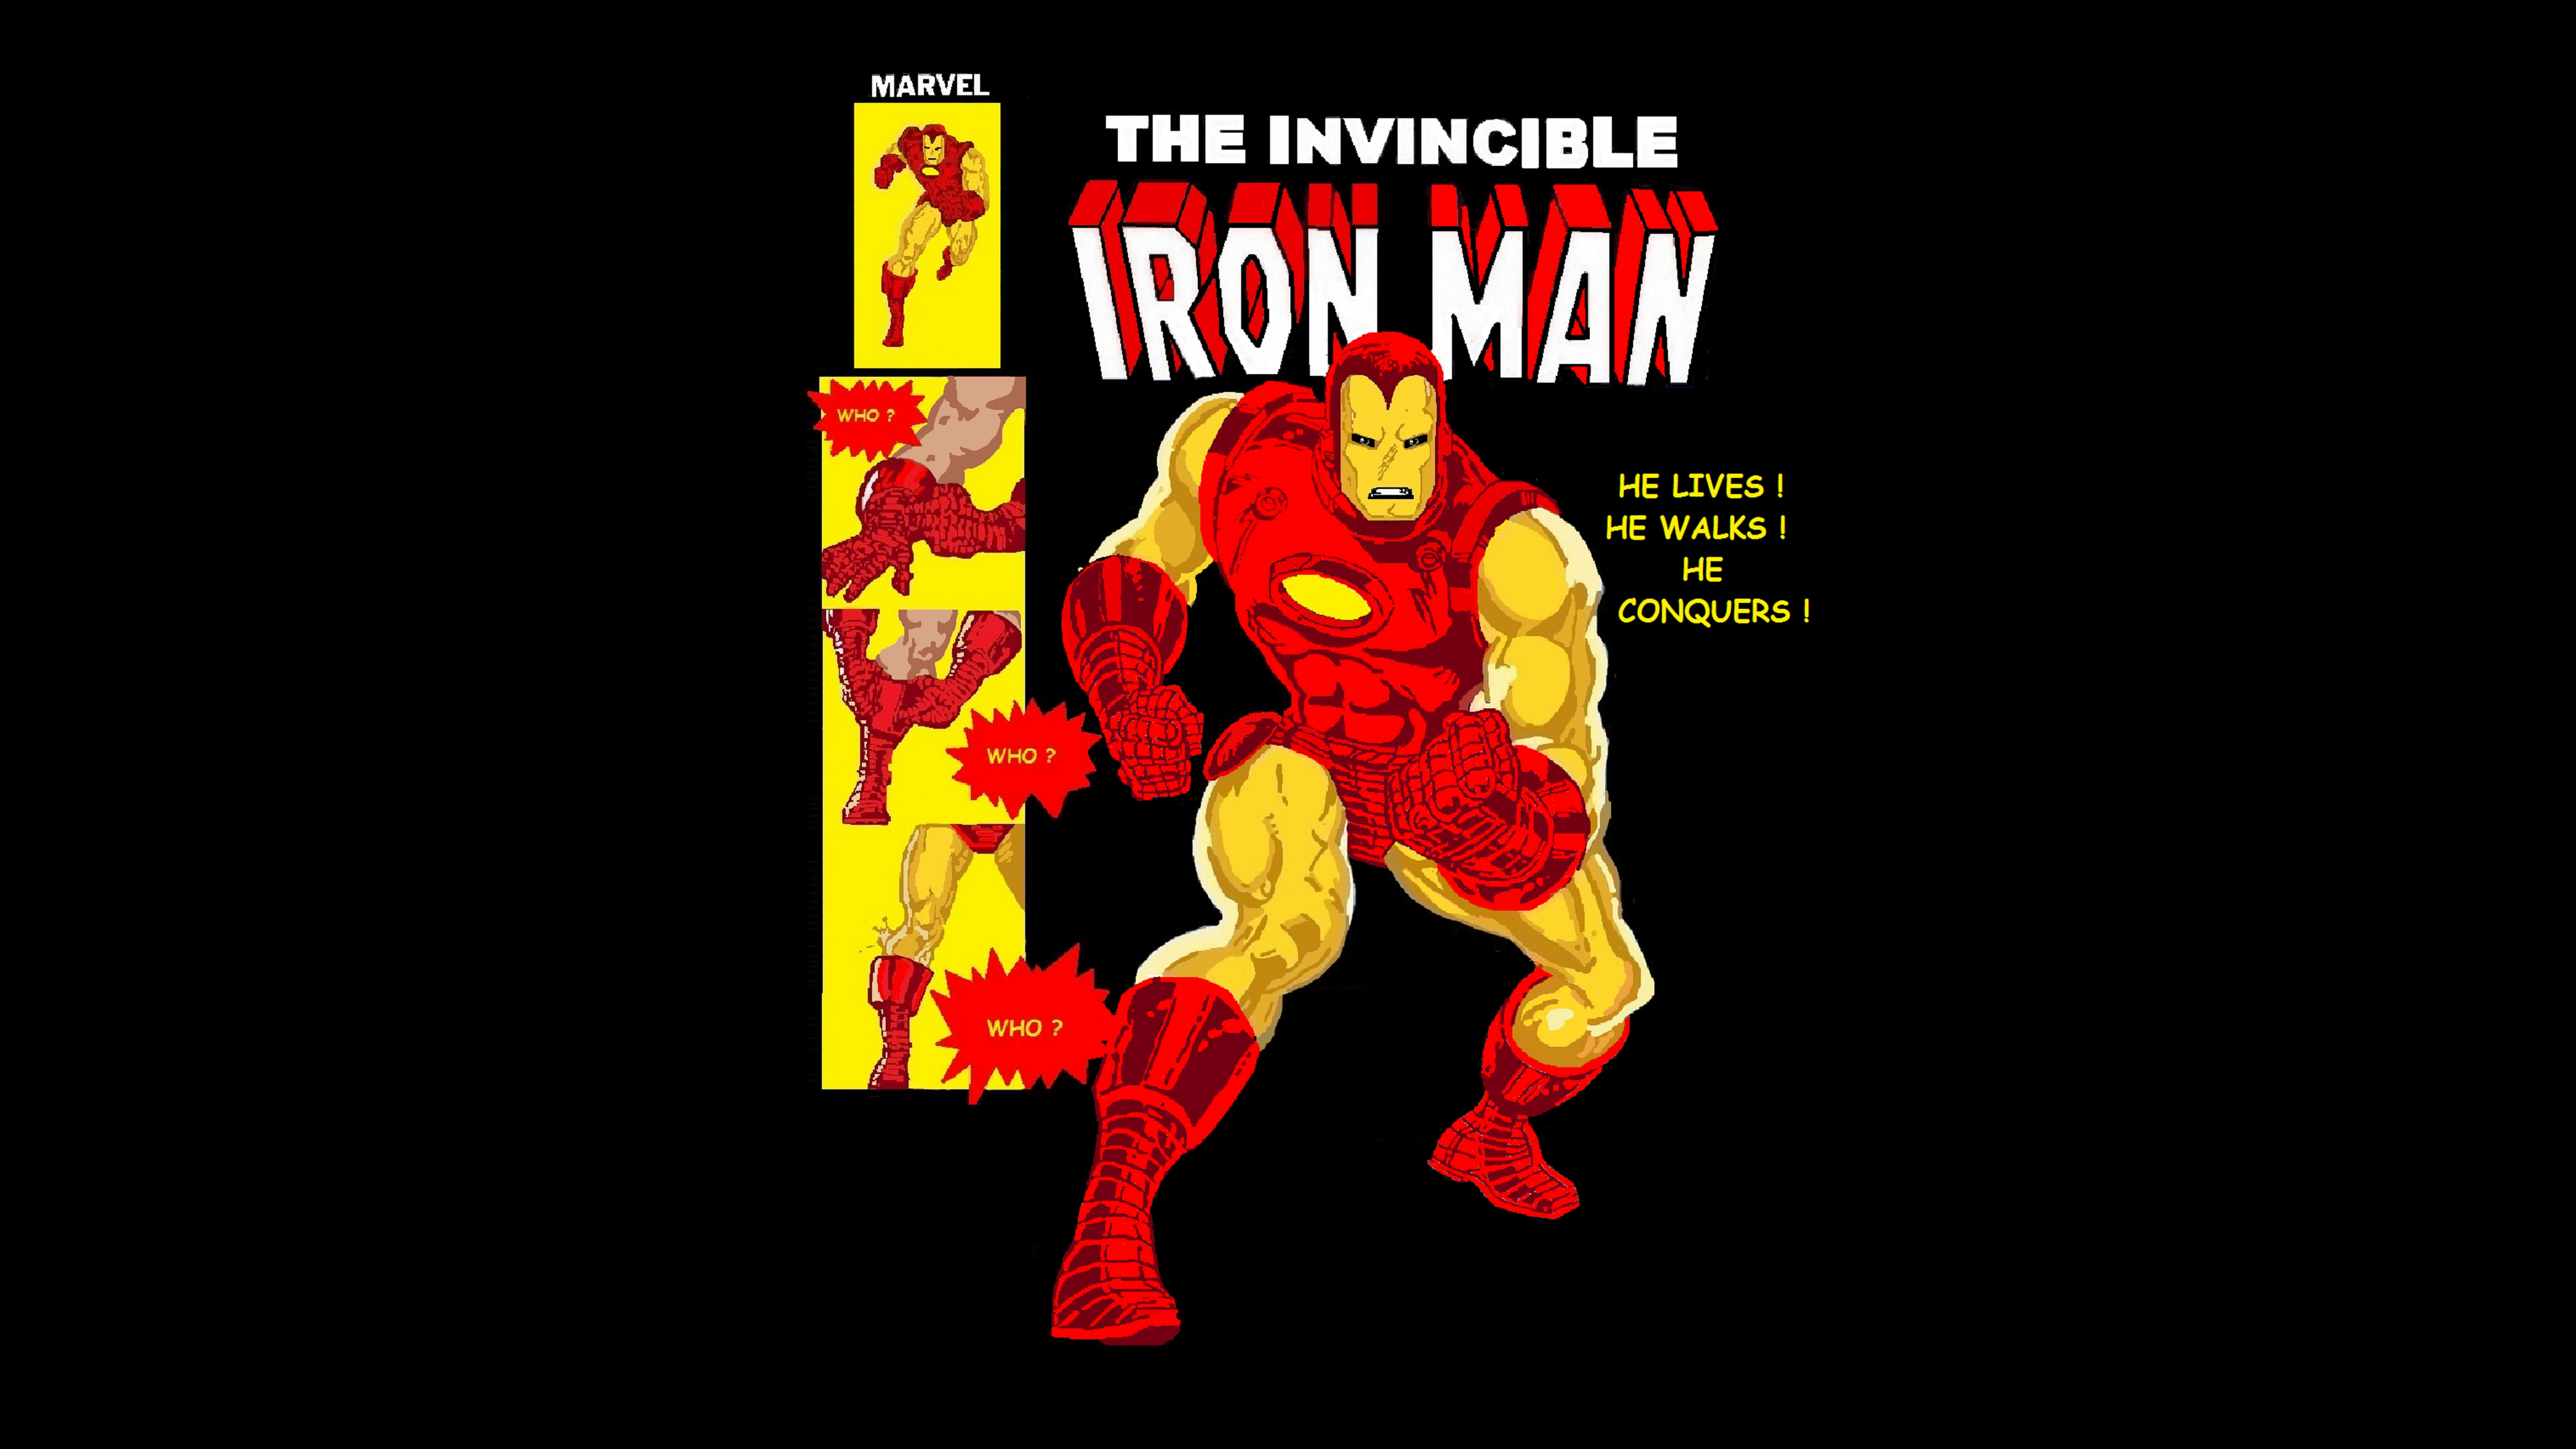 Descarga gratuita de fondo de pantalla para móvil de Iron Man, Historietas.